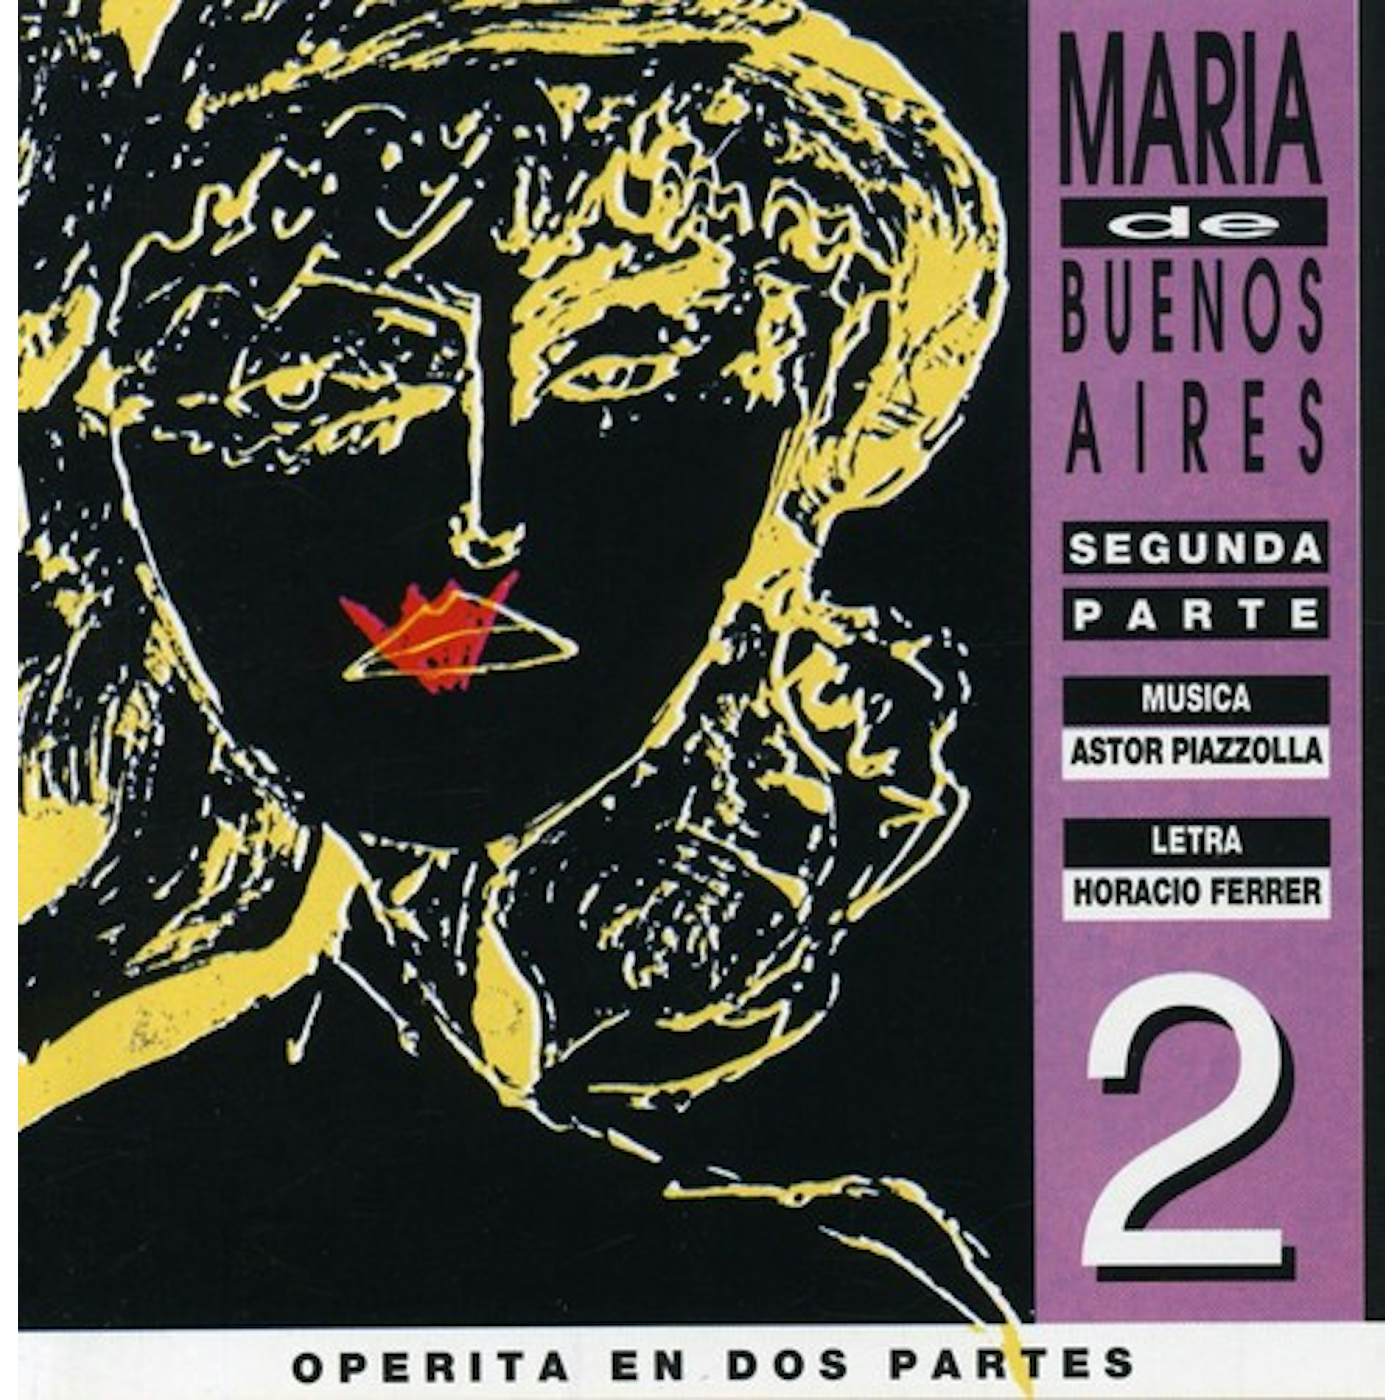 Astor Piazzolla MARIA DE BUENOS AIRES II CD